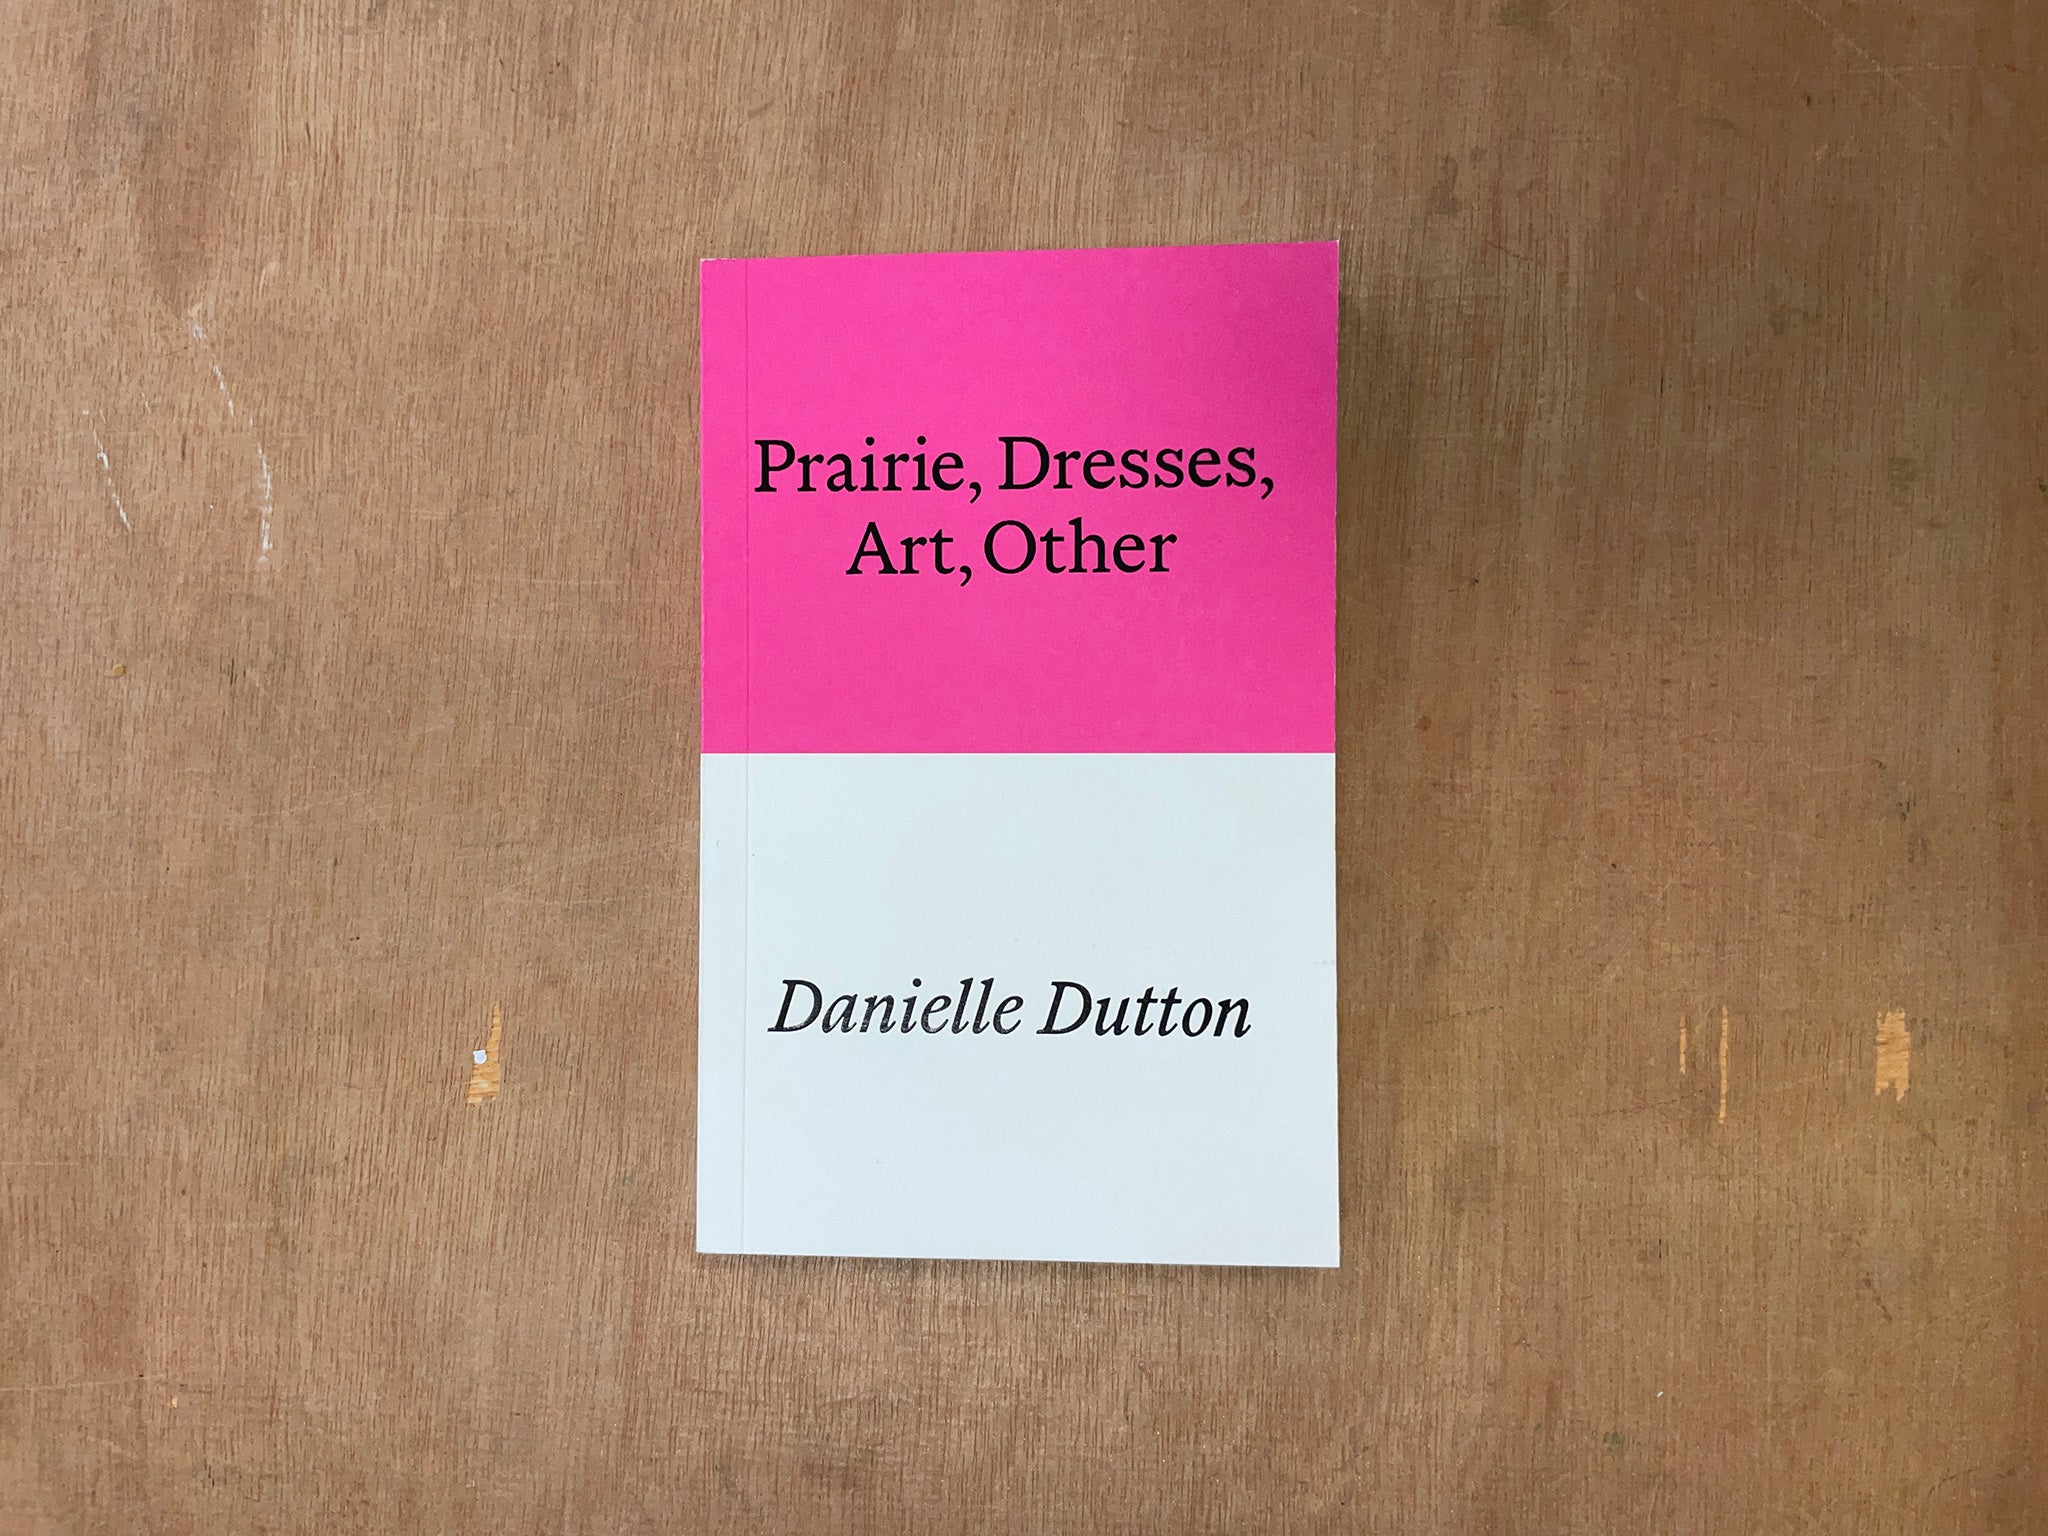 PRAIRIE, DRESSES, ART OTHER by Danielle Dutton